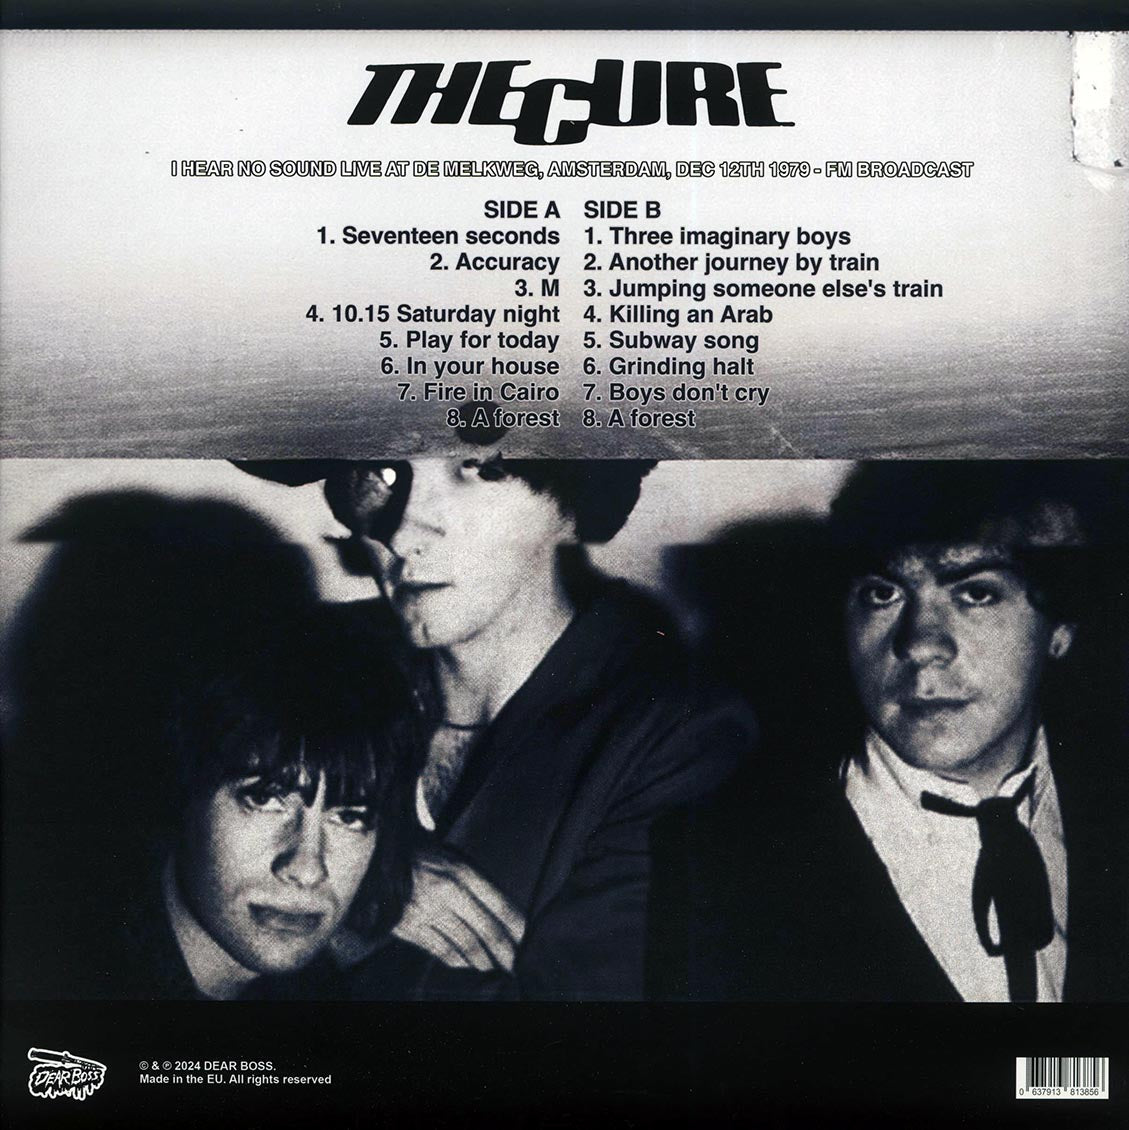 The Cure - I Hear No Sound: Live At De Melkweg, Amsterdam, Dec 12th 1979 (yellow vinyl) - Vinyl LP, LP